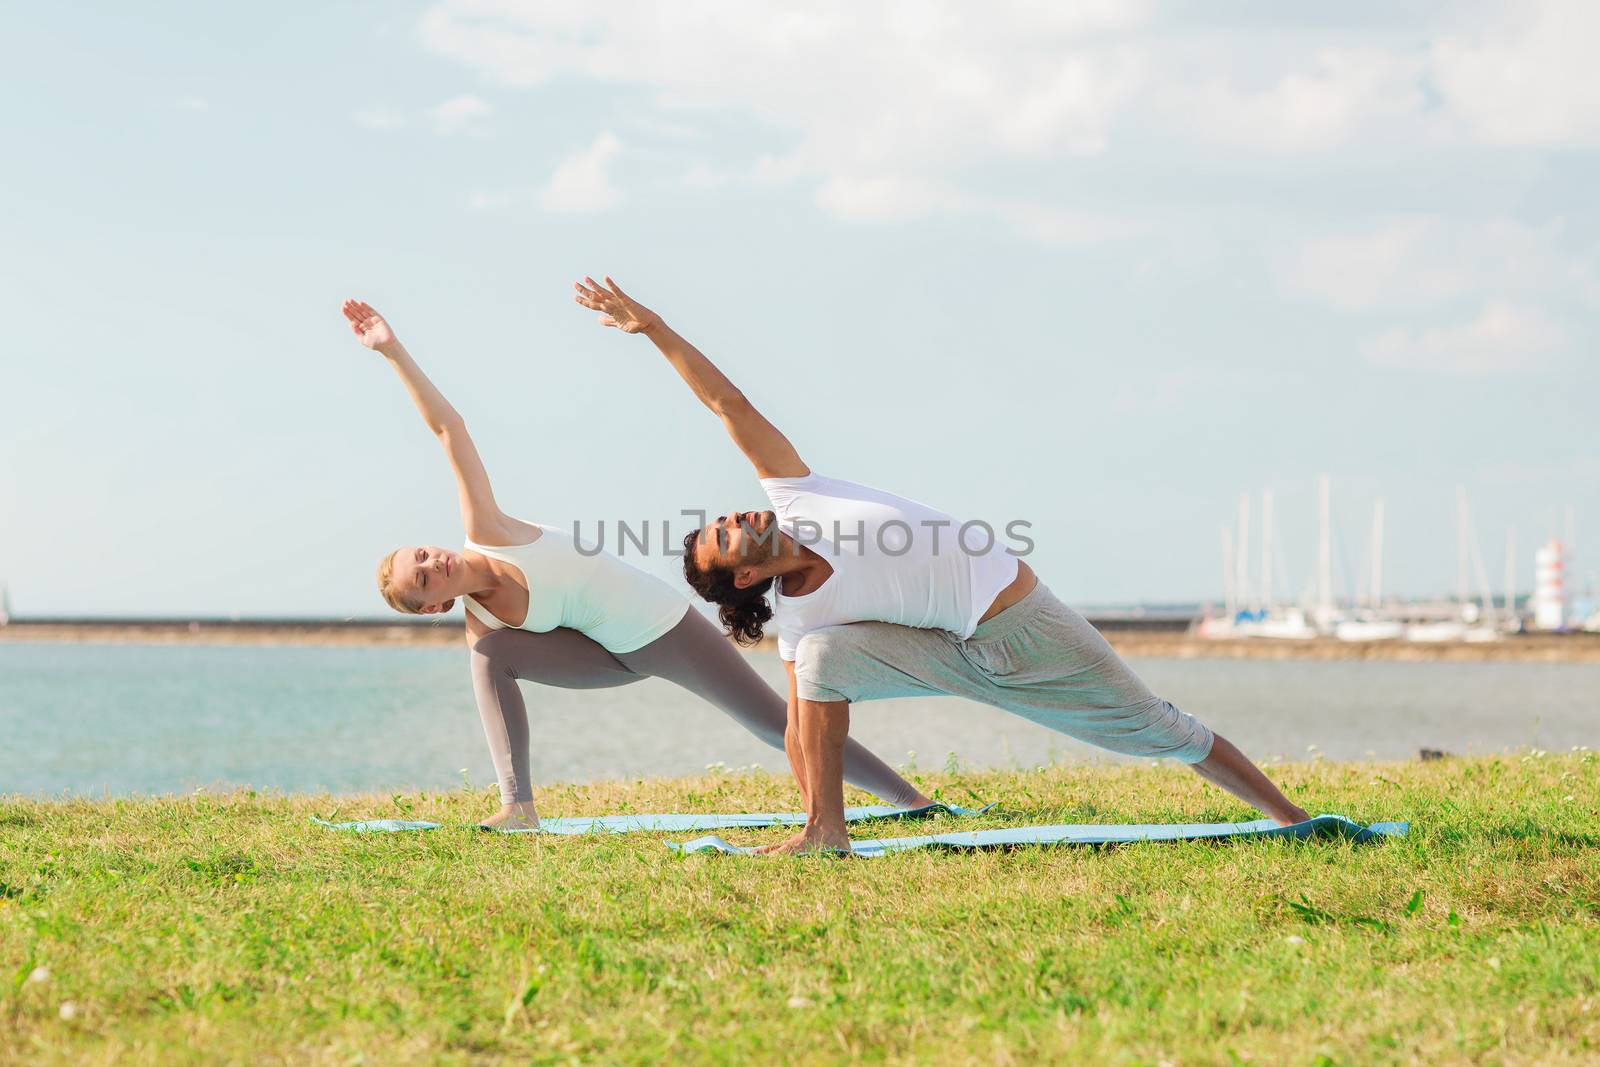 smiling couple making yoga exercises outdoors by dolgachov